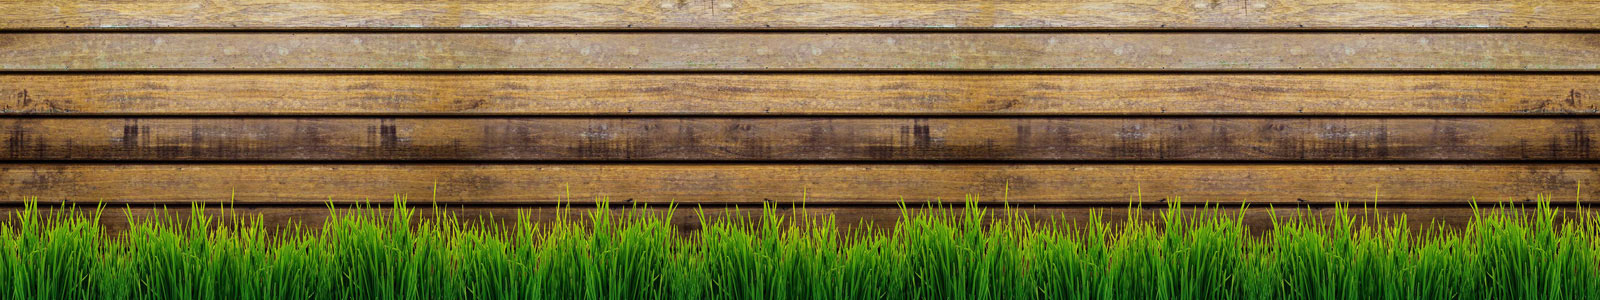 №4876 - Трава на фоне деревянной стены